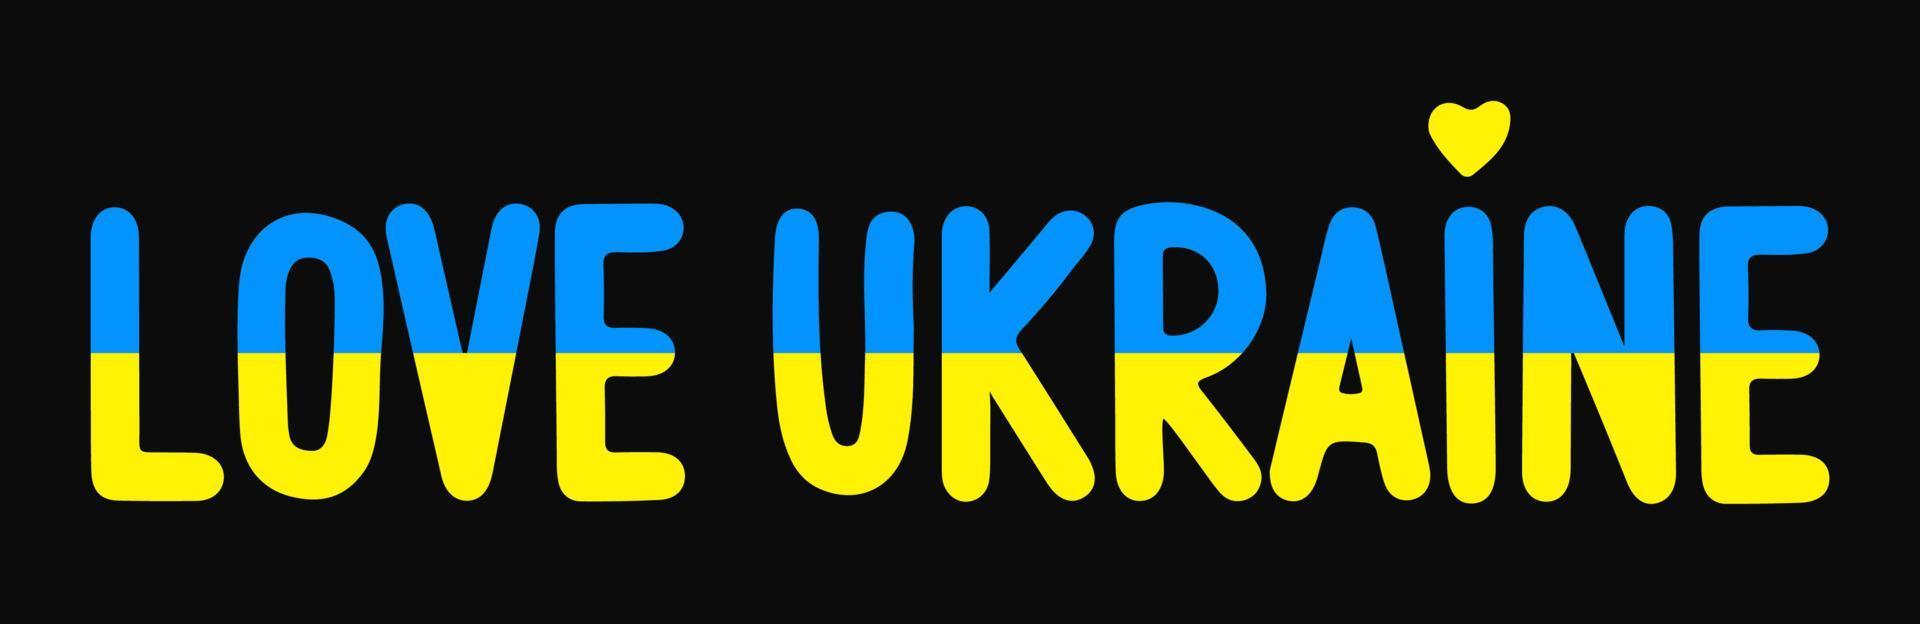 texte dessiné à la main aime l'ukraine. affiche de patriotisme international et ukrainien. le lettrage arrête le concept de guerre en ukraine. doodle illustration texte du drapeau ukrainien aux couleurs bleu et jaune vecteur